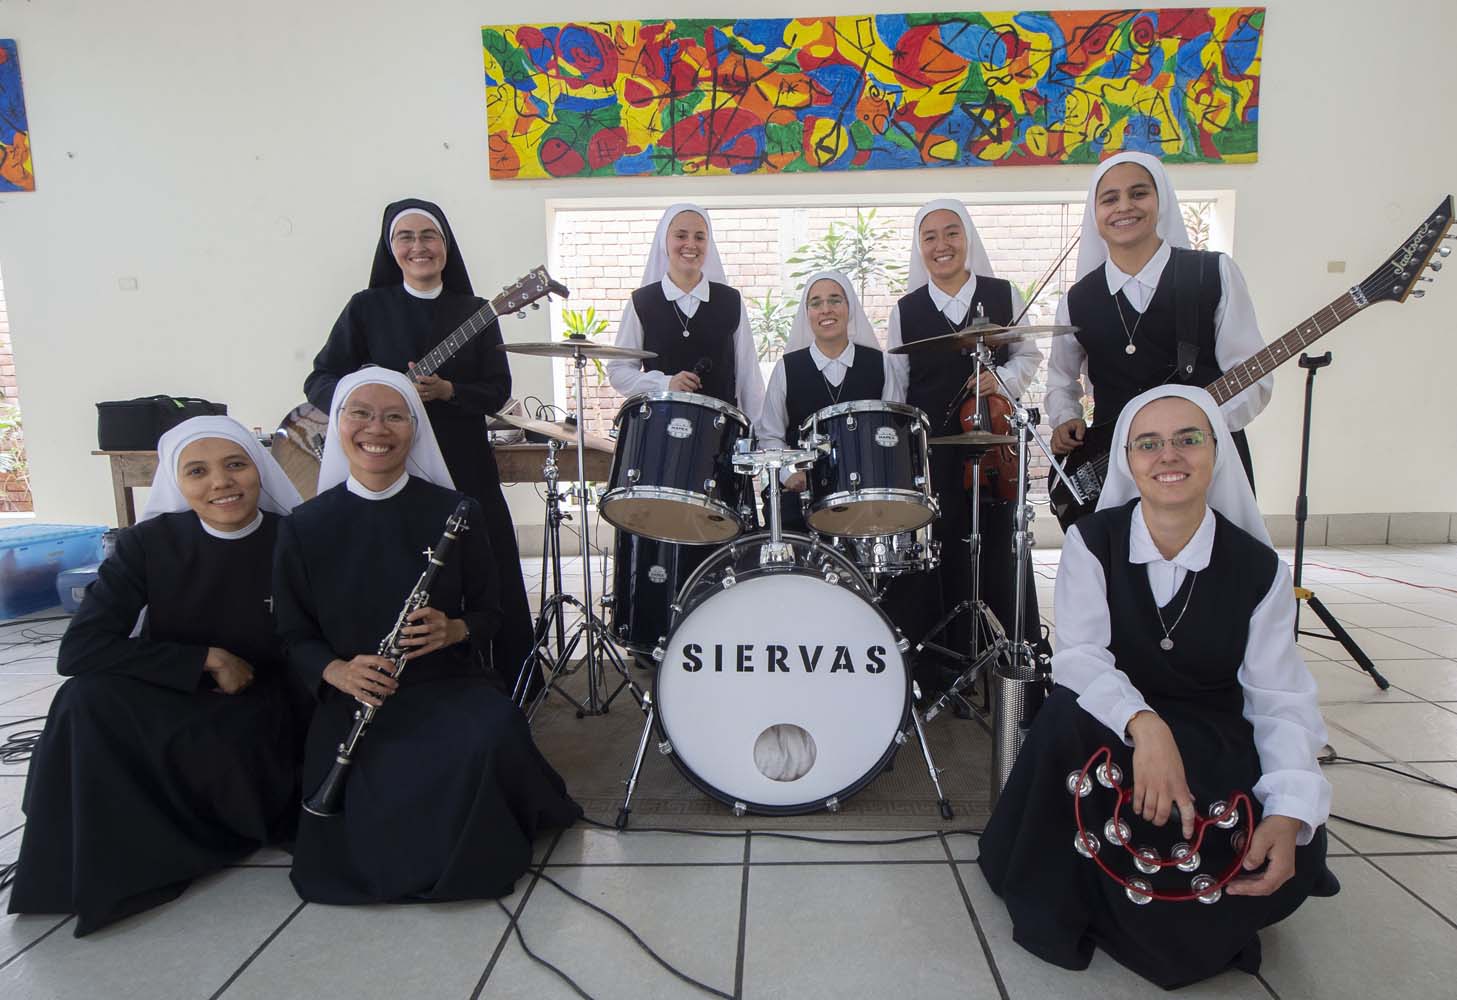 Siervas, las religiosas roqueras que harán bailar al Papa en Panamá (Fotos)